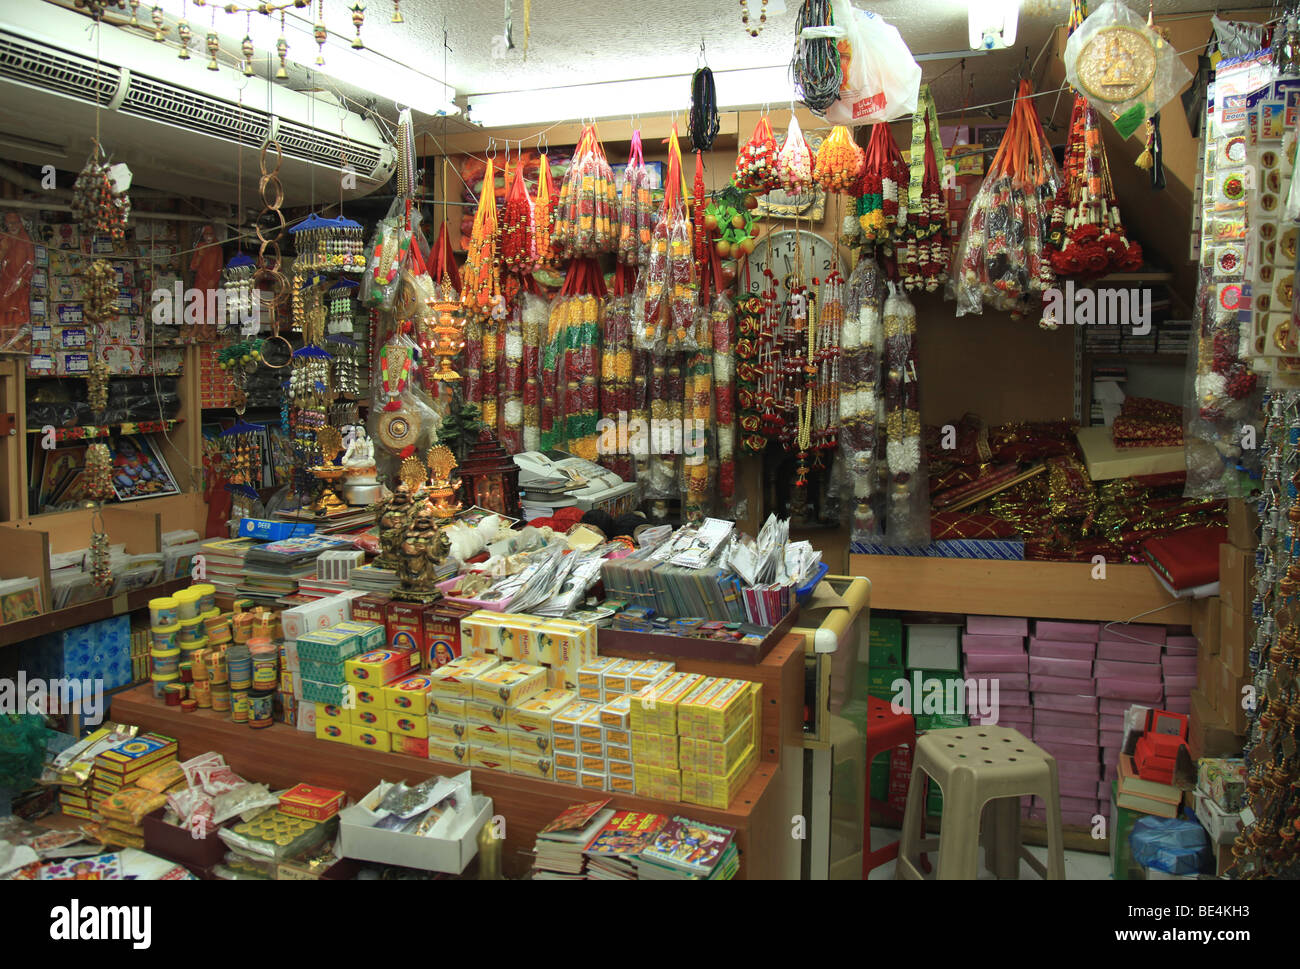 Shop in Hindi Lane, Dubai selling religious paraphernalia Stock Photo